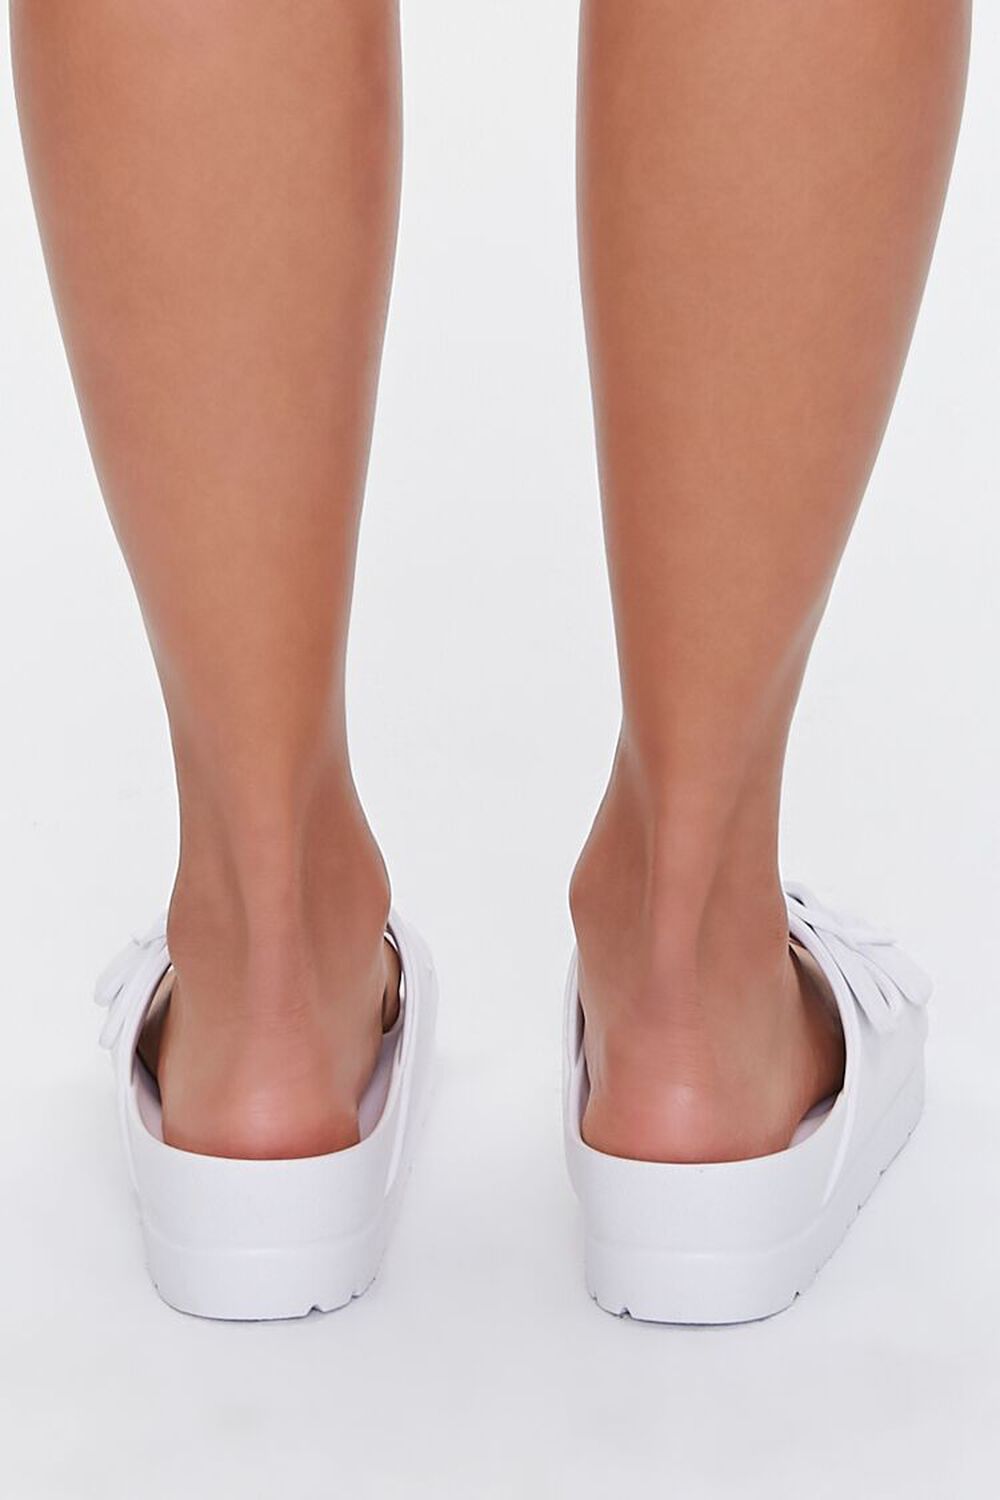 WHITE Buckled Flatform Sandals, image 3